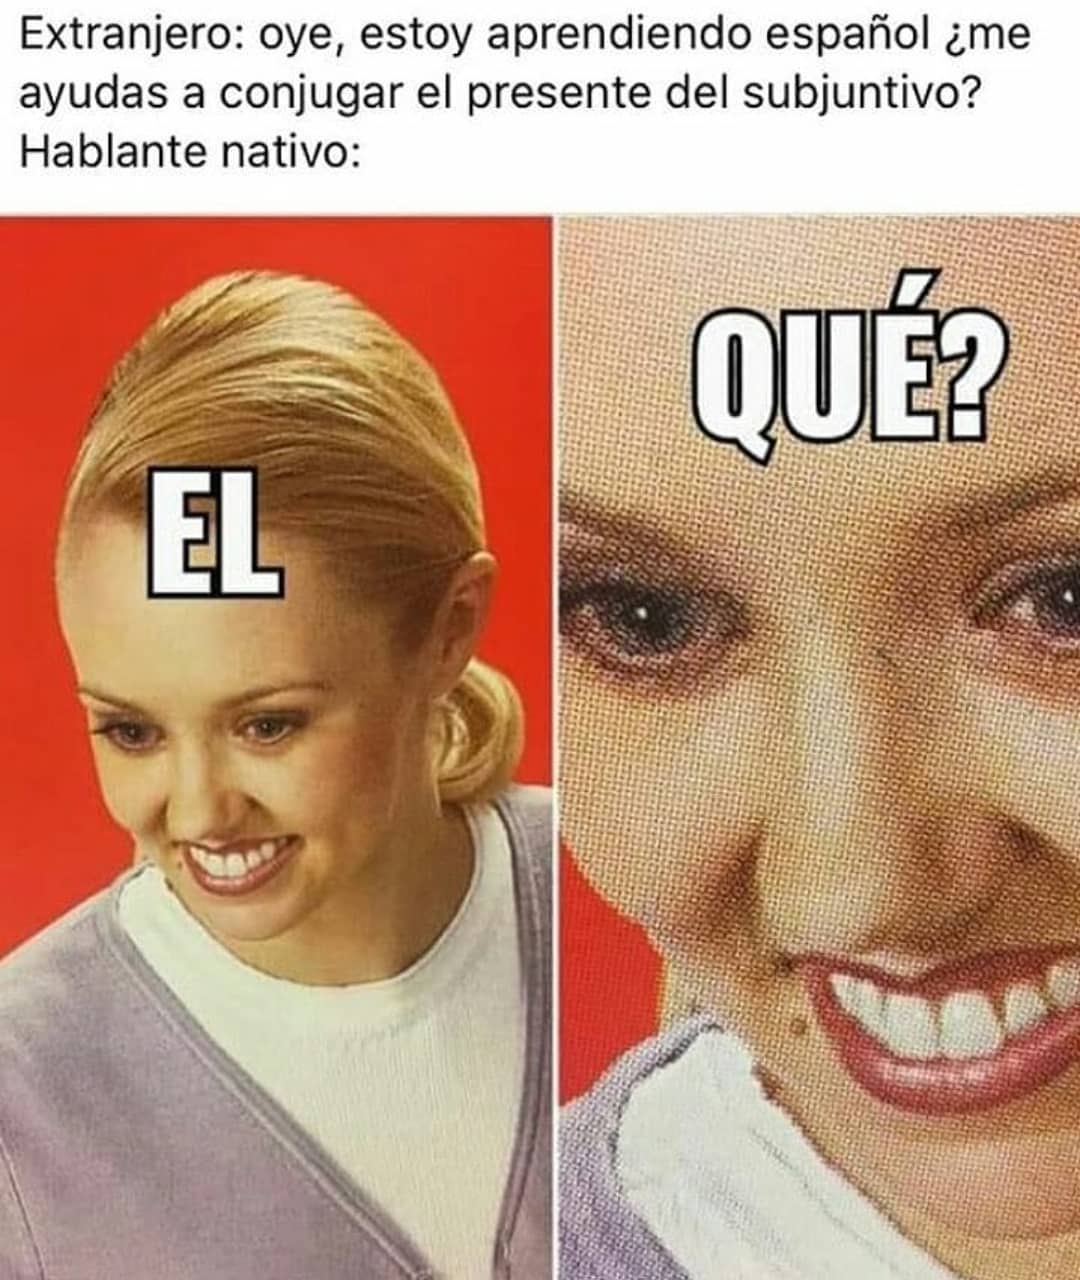 Extranjero: Oye, estoy aprendiendo español ¿Me ayudas a conjugar el presente del subjuntivo? Hablante nativo: El qué?